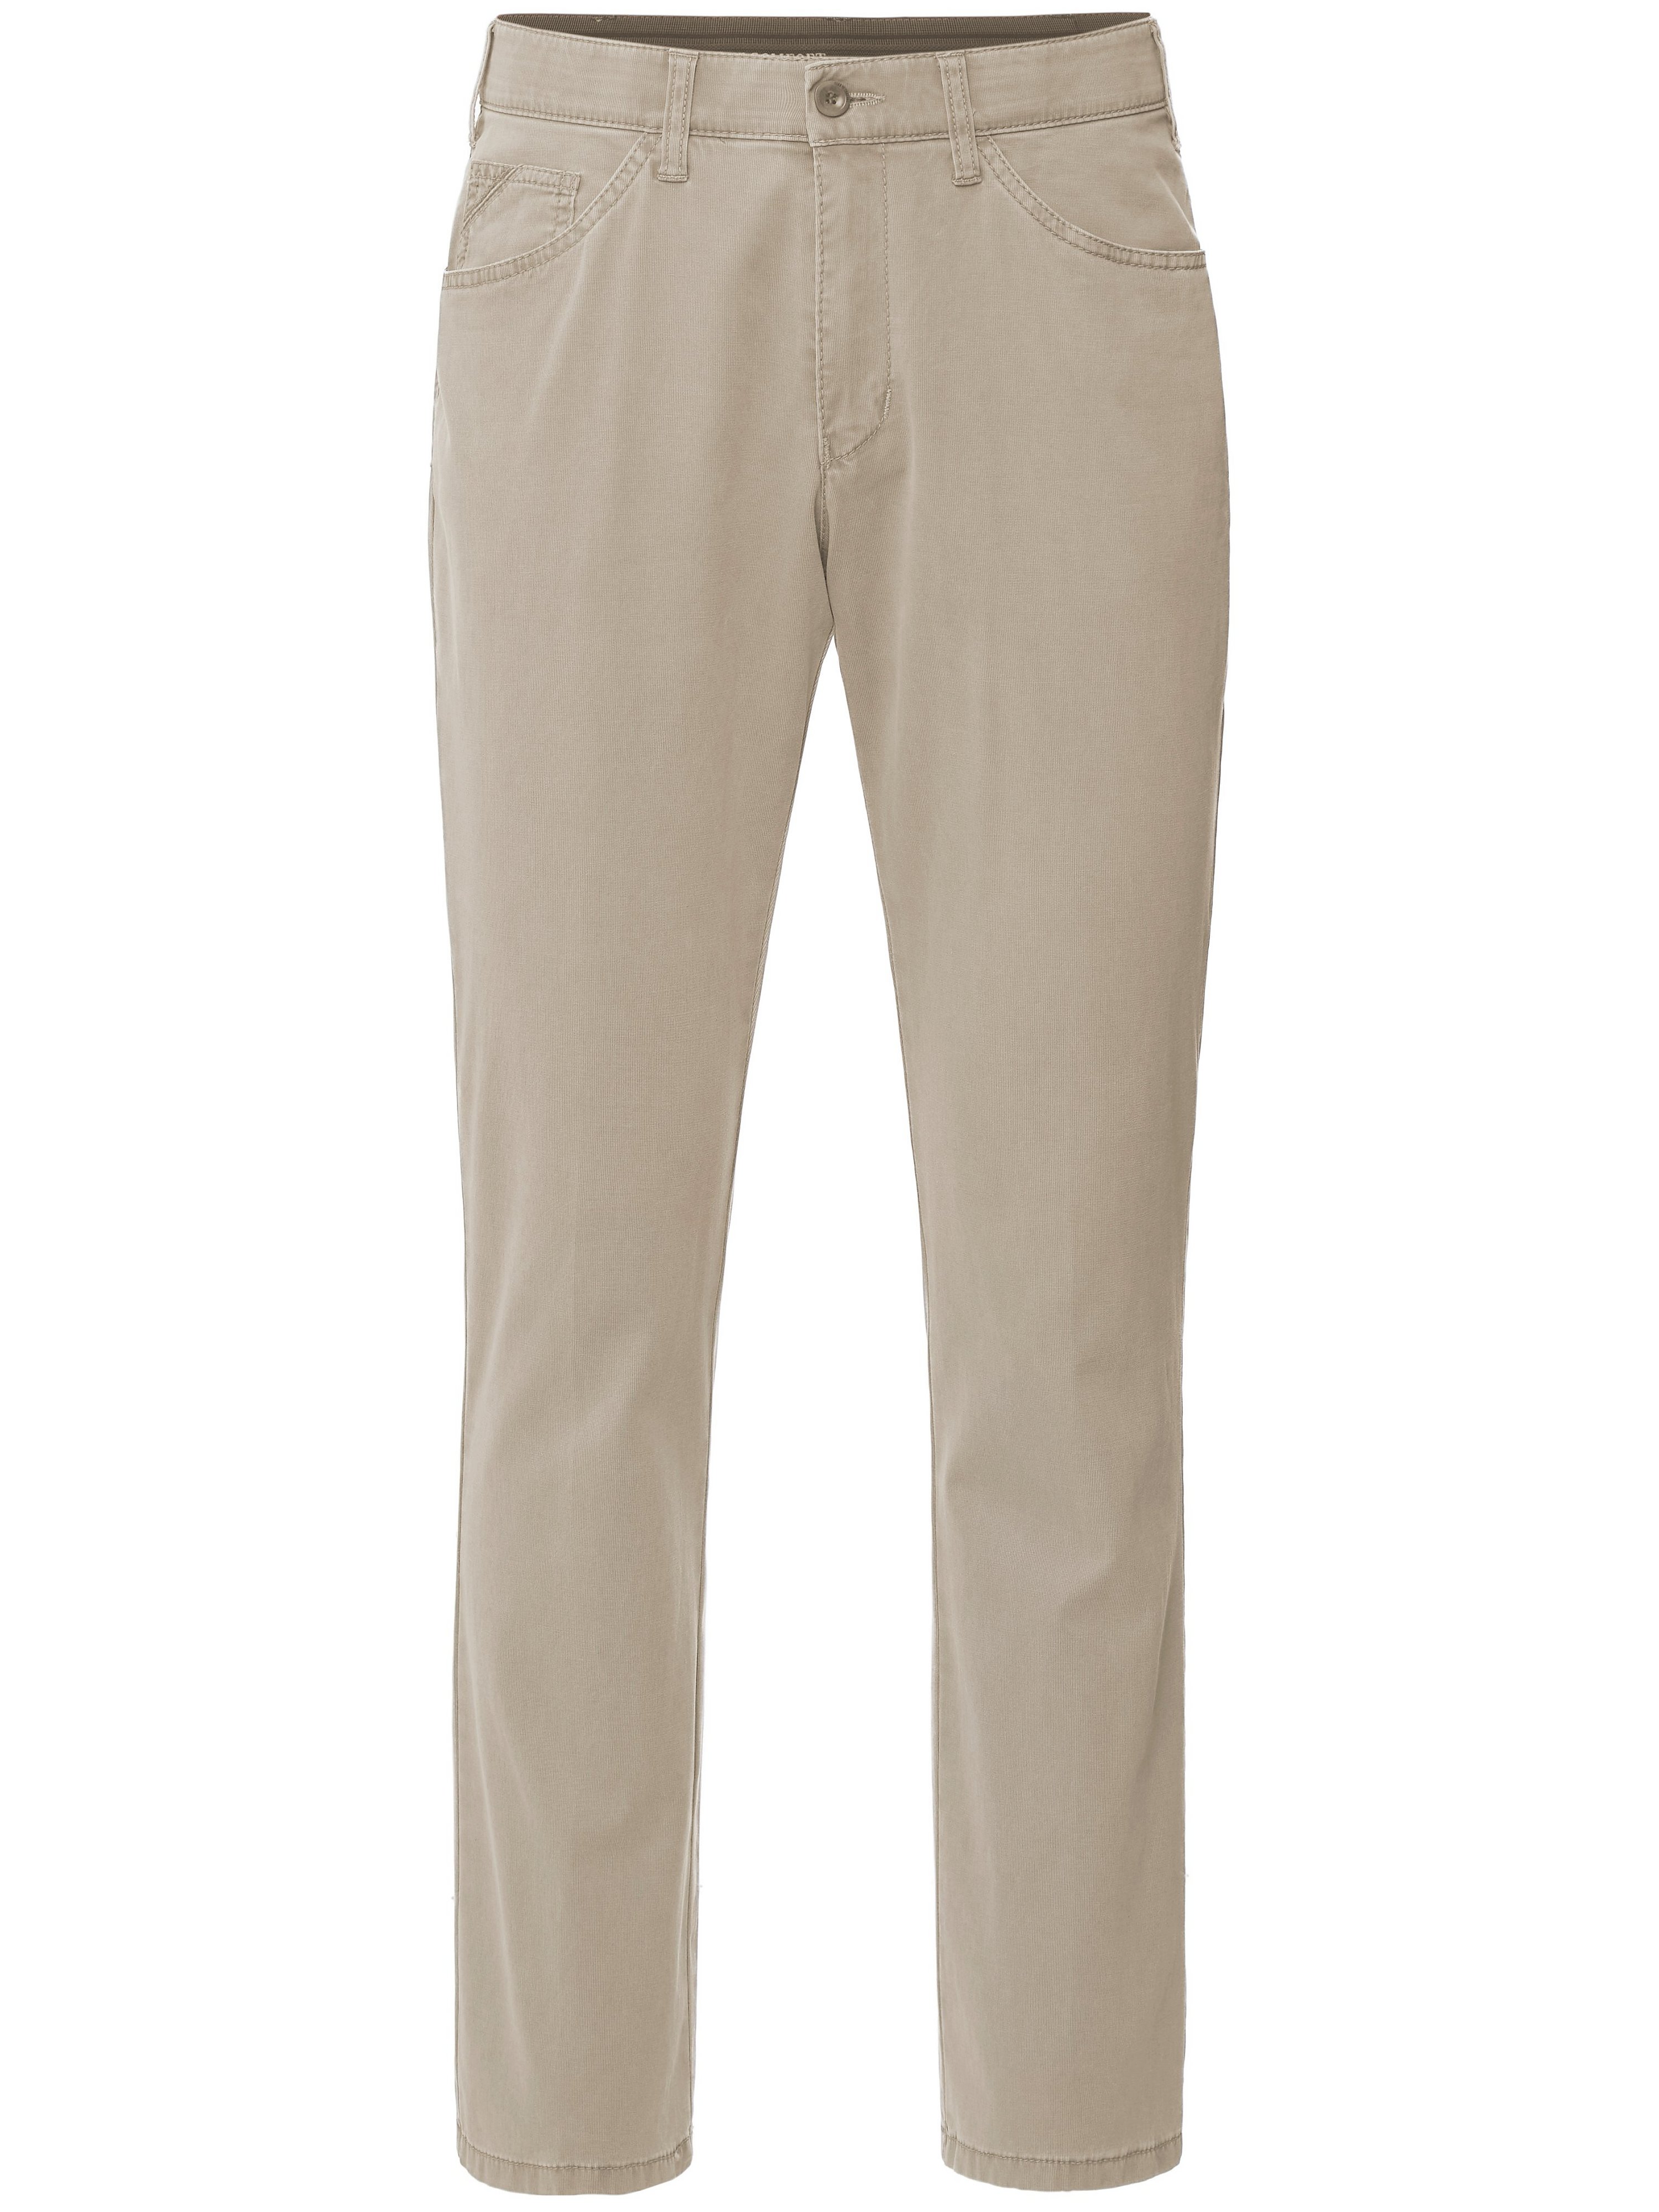 Le pantalon Comfort Fit modèle Keno  CLUB OF COMFORT beige taille 52